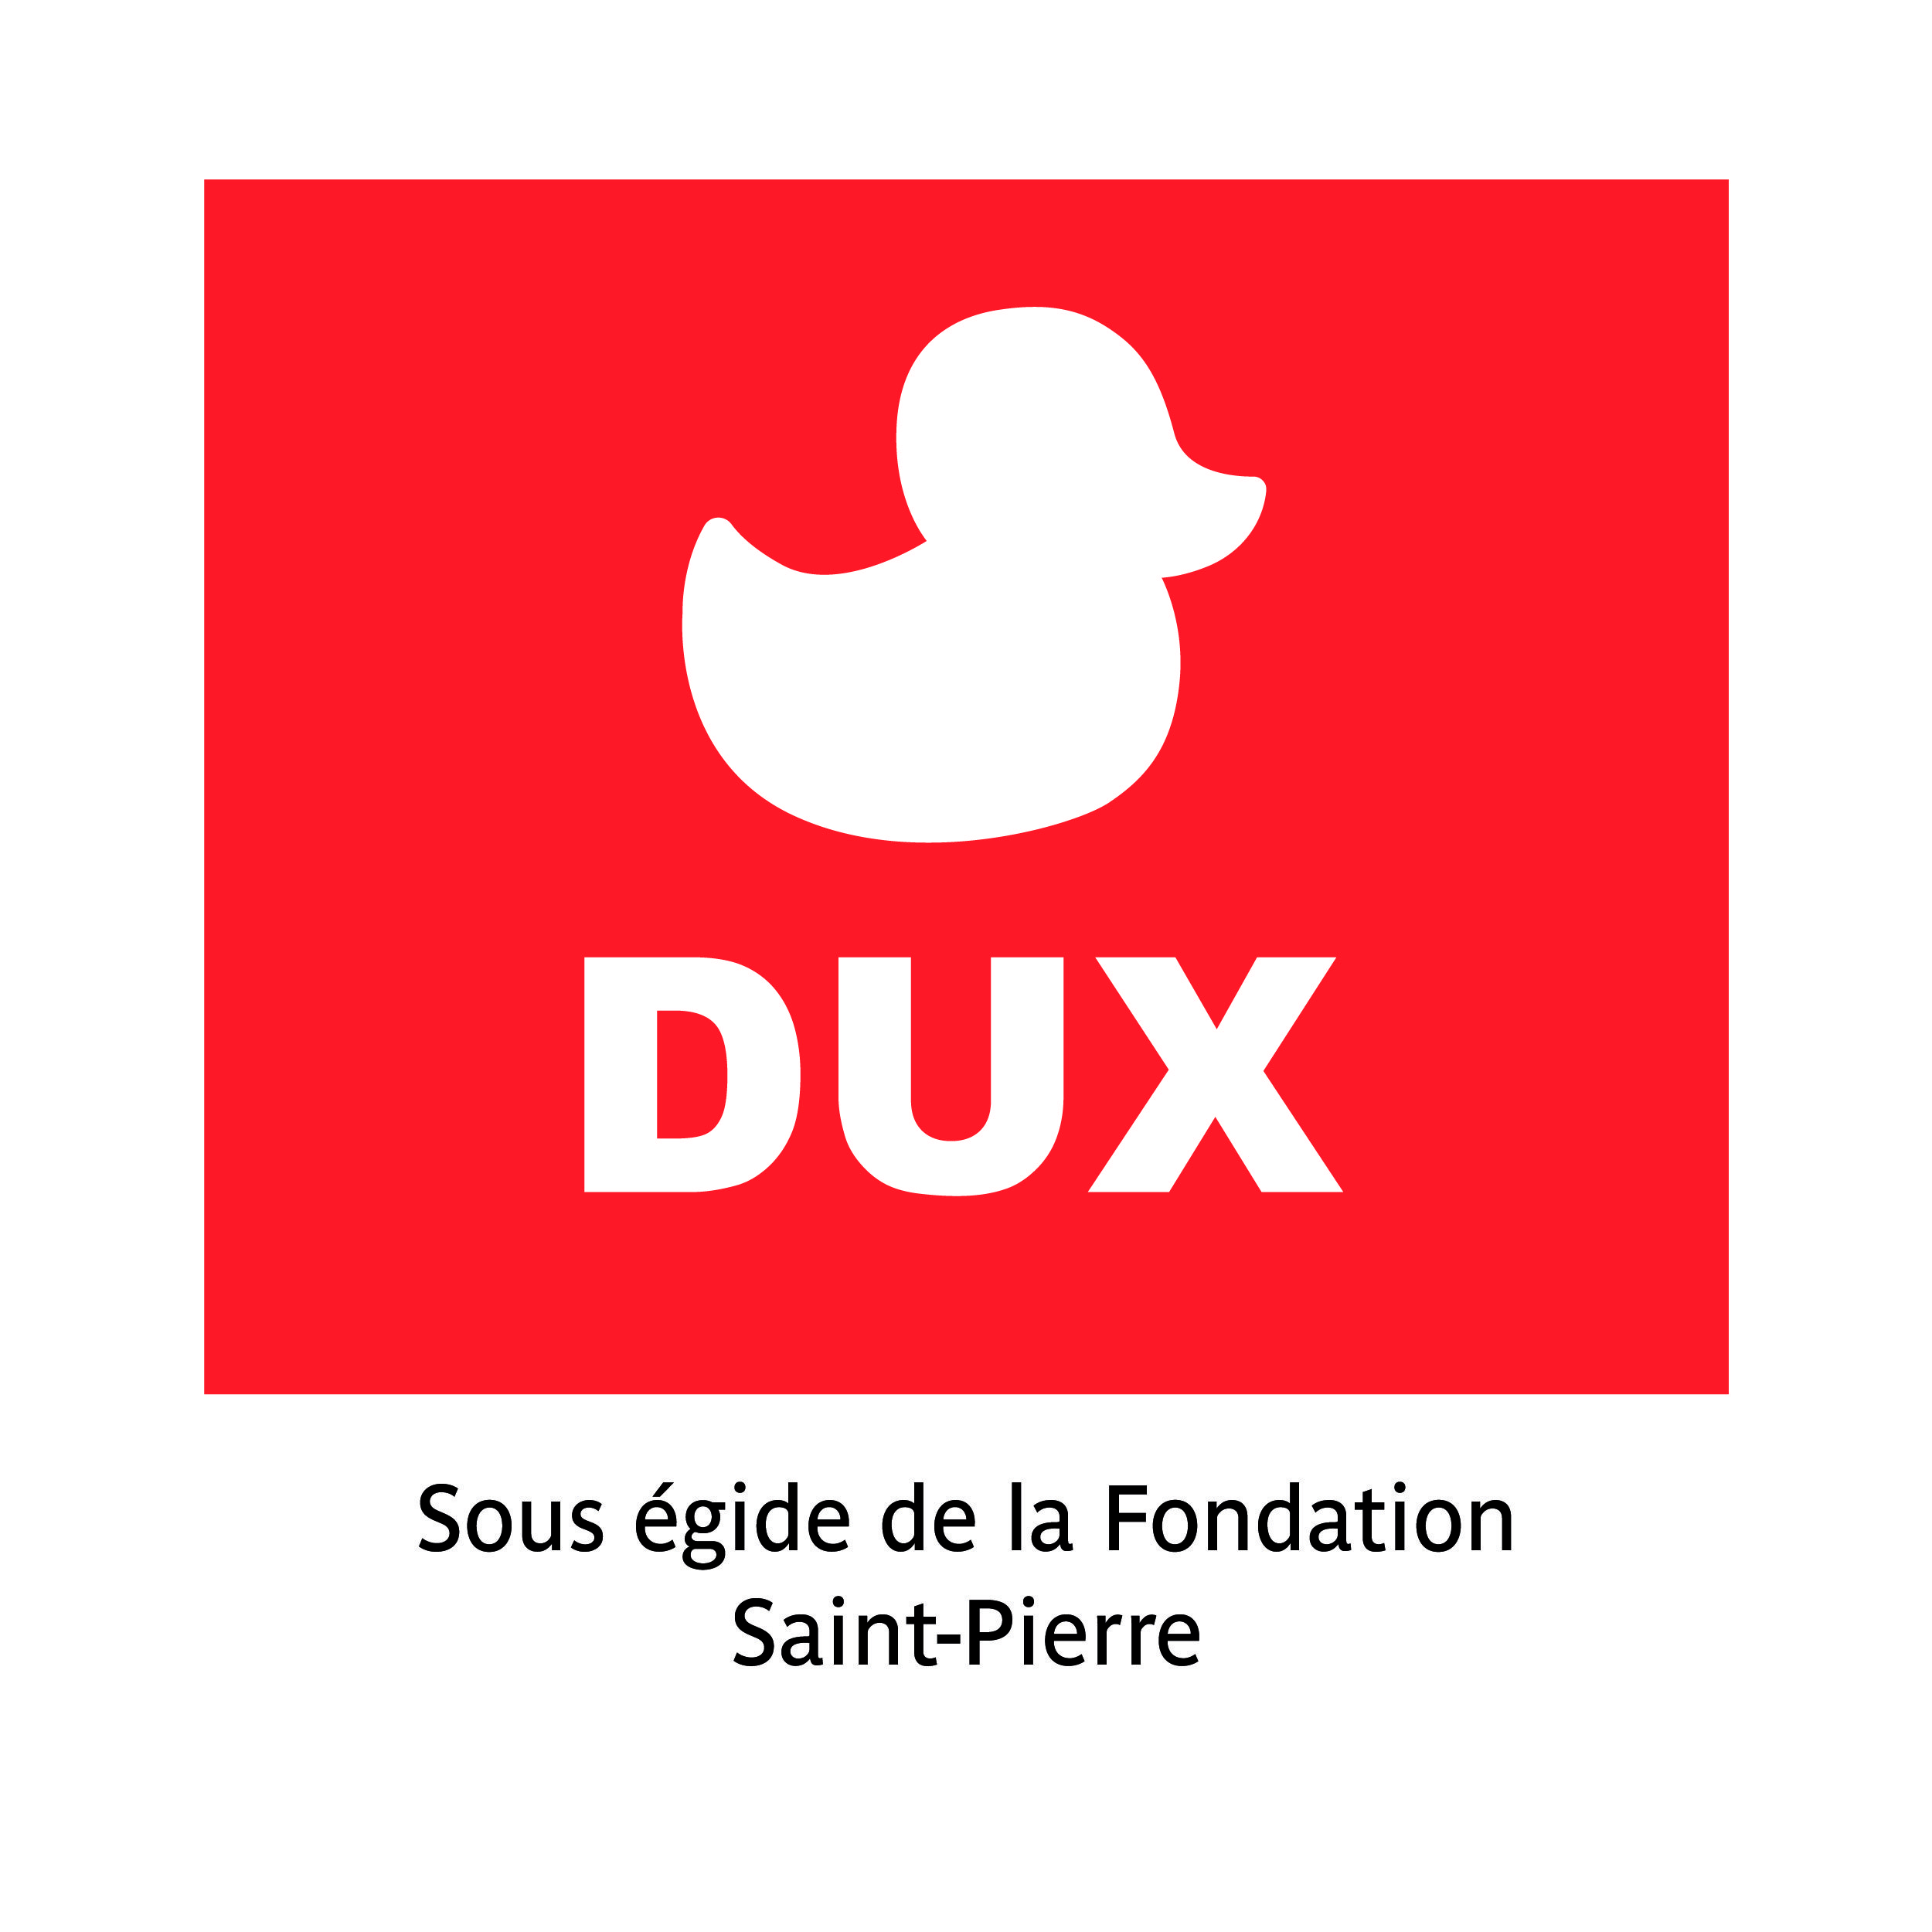 Fondation Saint-Pierre